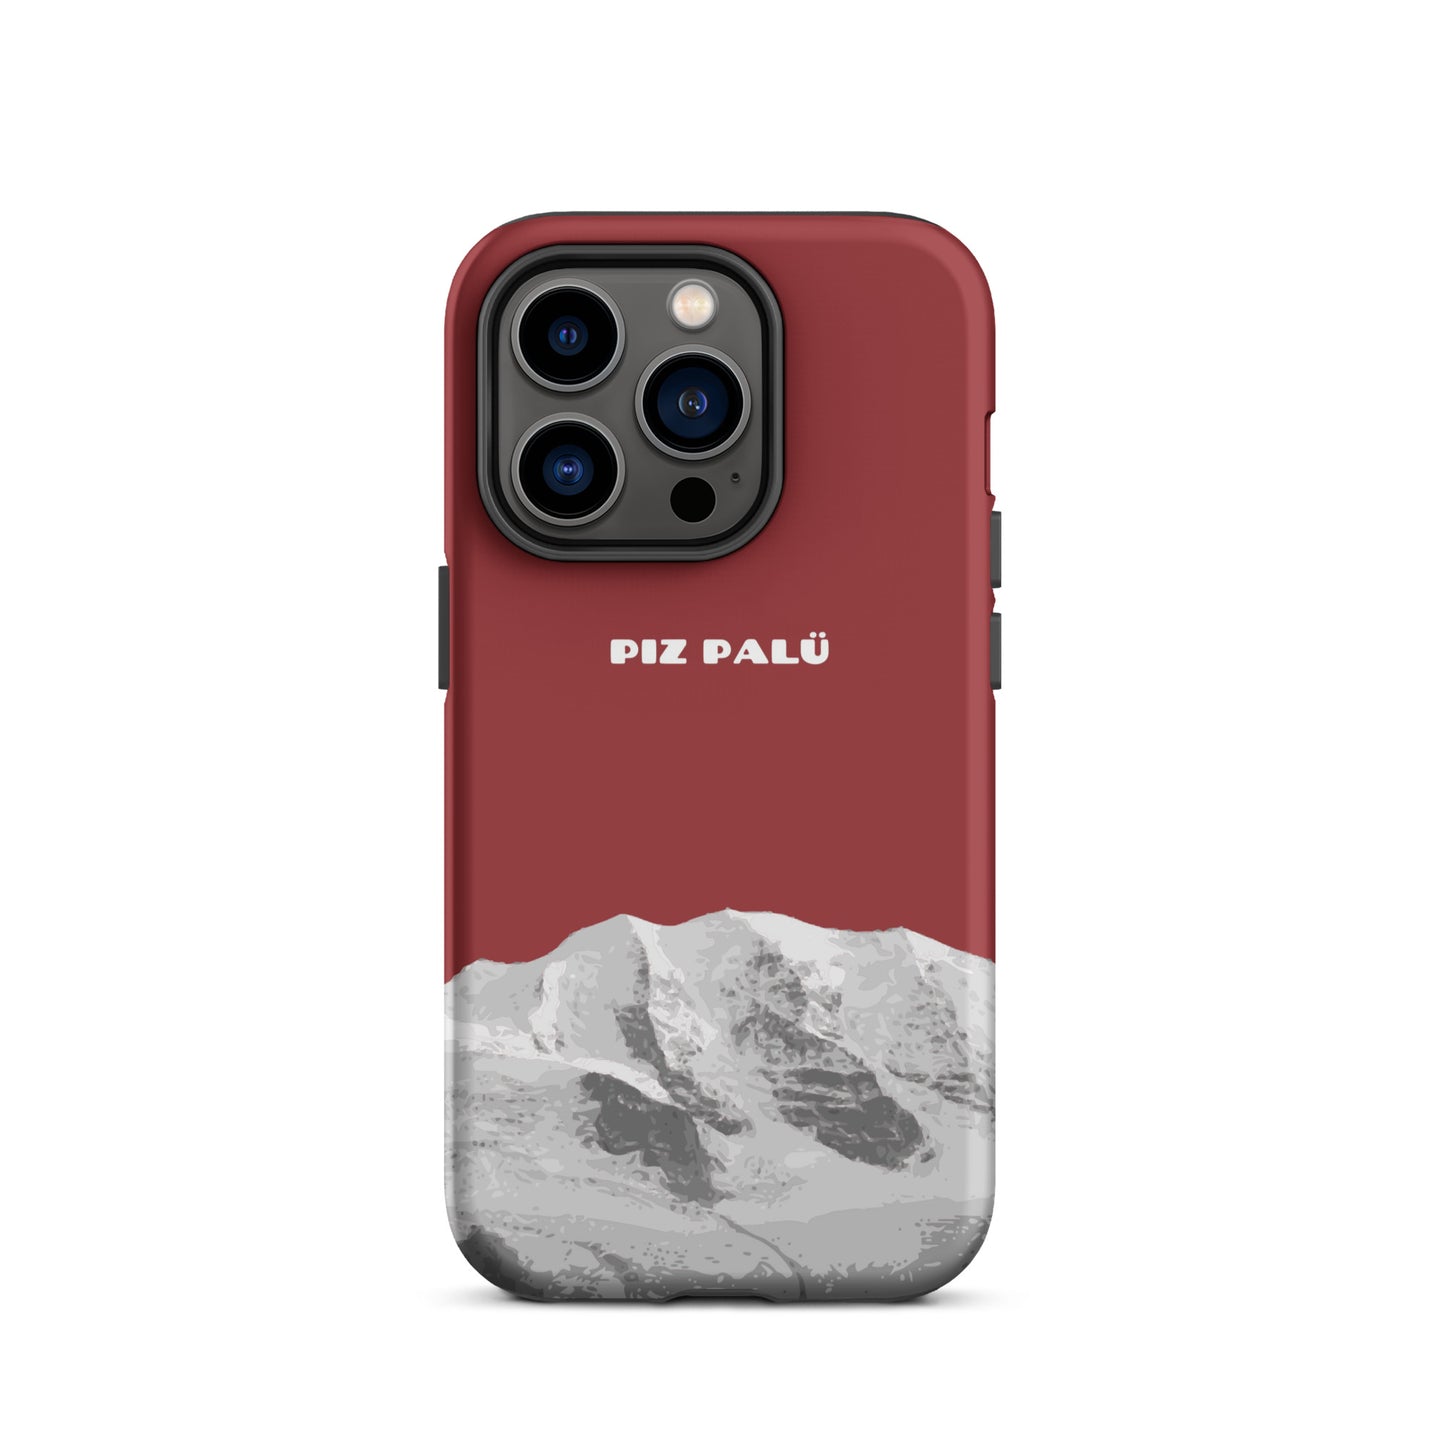 Hülle für das iPhone 14 Pro von Apple in der Farbe Pastellviolett, dass den Piz Palü in Graubünden zeigt.